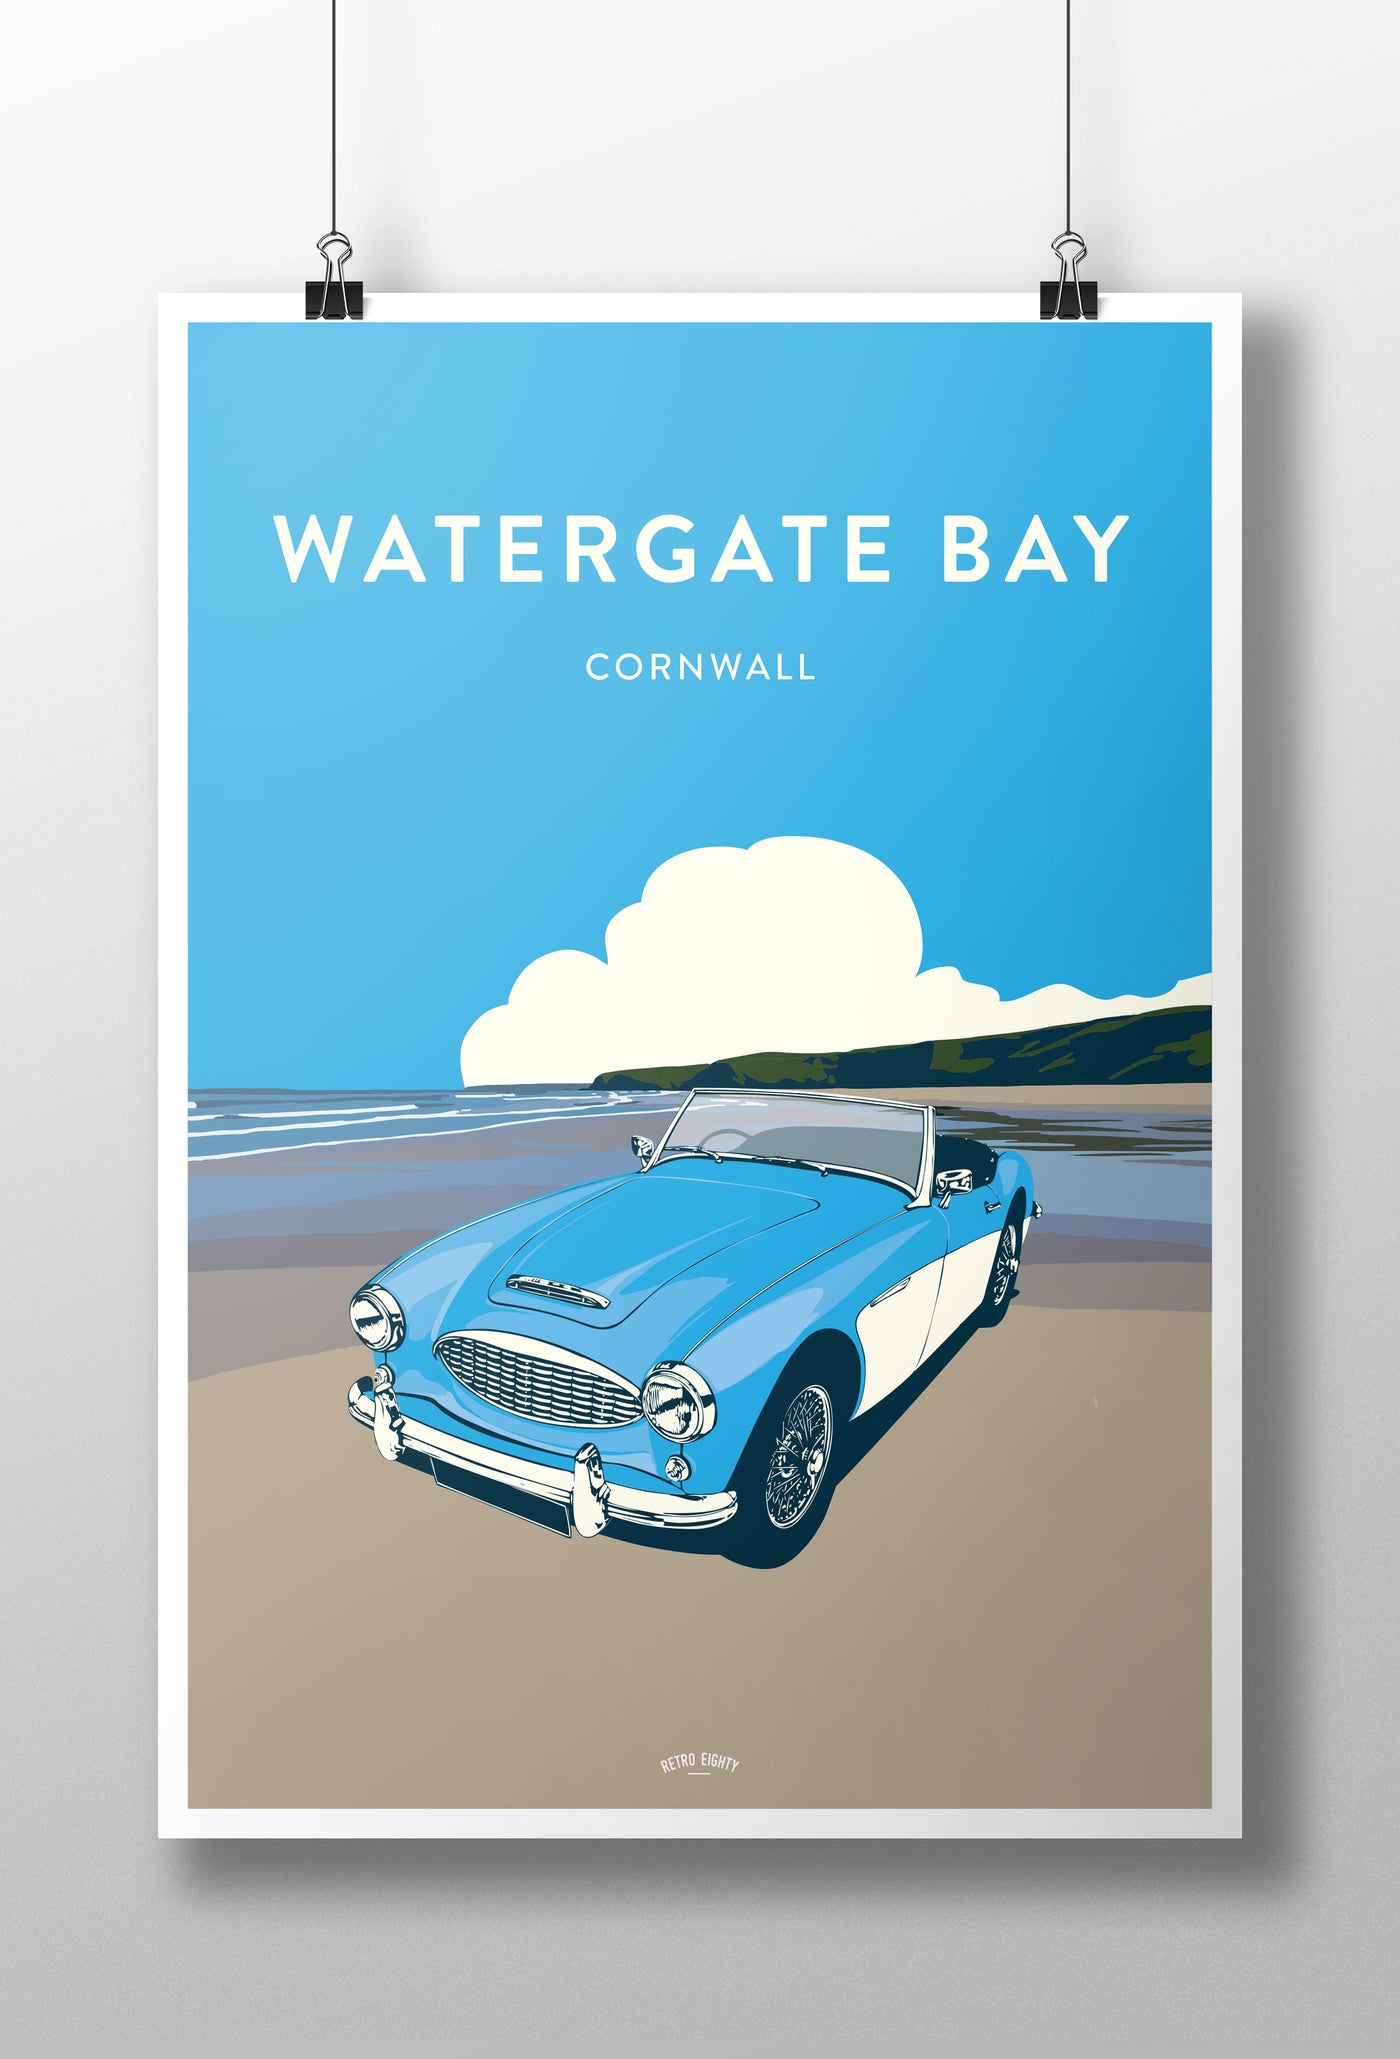 'Watergate Bay' Big Healey Prints